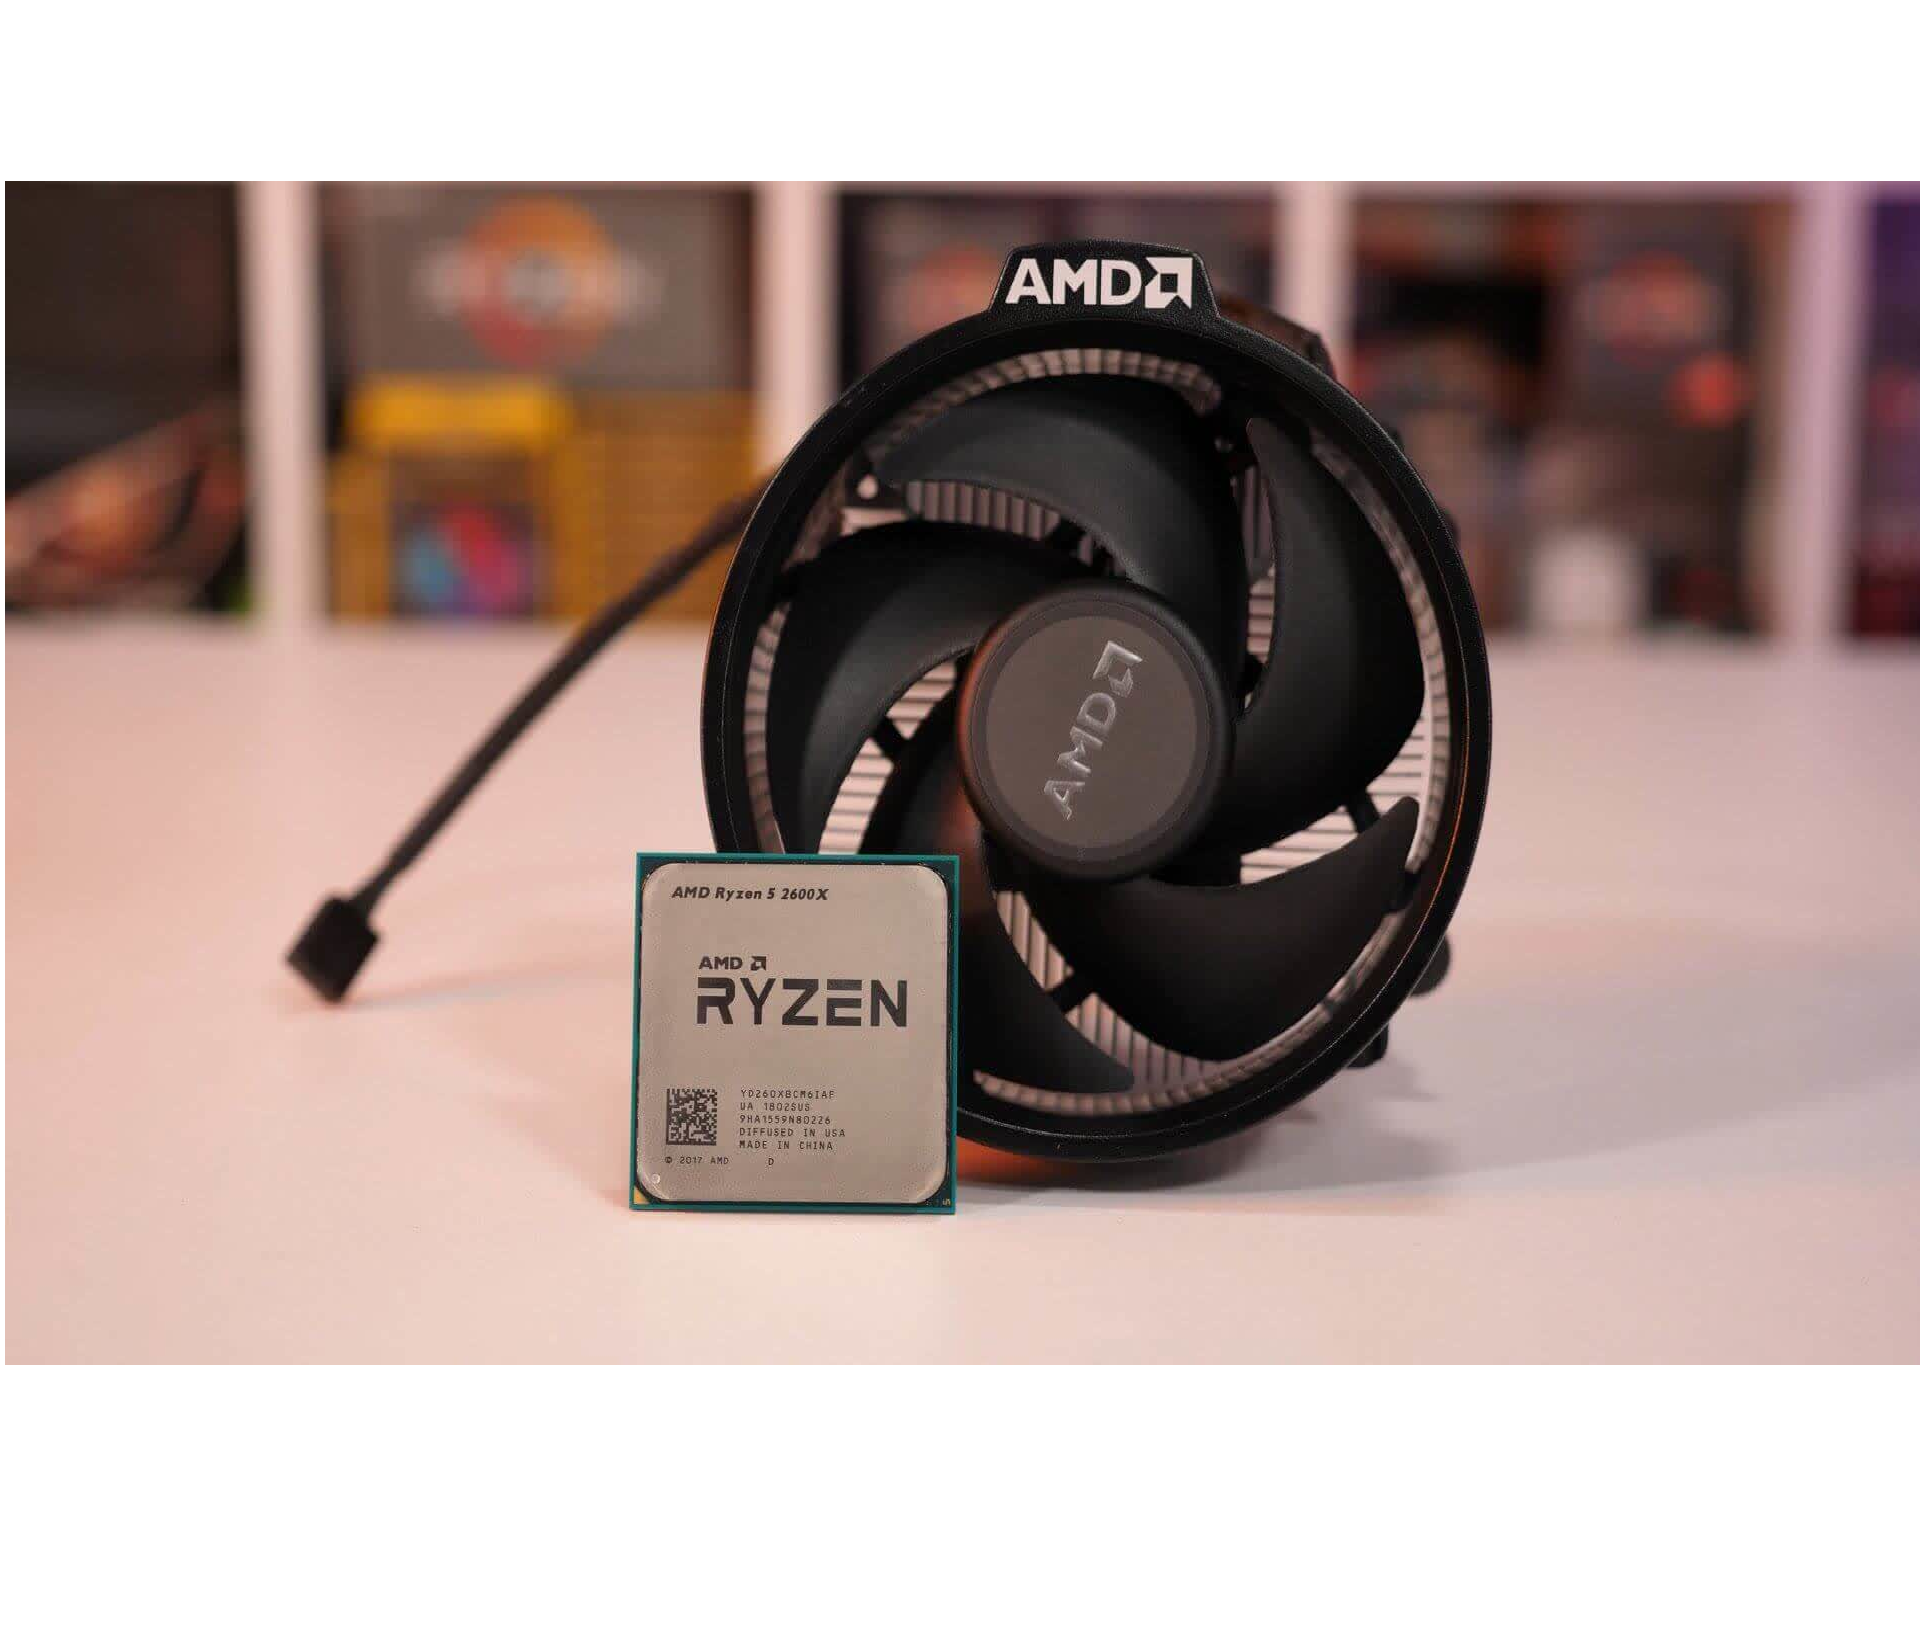 Custom Build Gaming PC - AMD Ryzen 5, 16GB DDR4, 3x Corsair RGB Fans, GTX 1050TI,  Razer Cynosa + Abyssus Lite (49895)